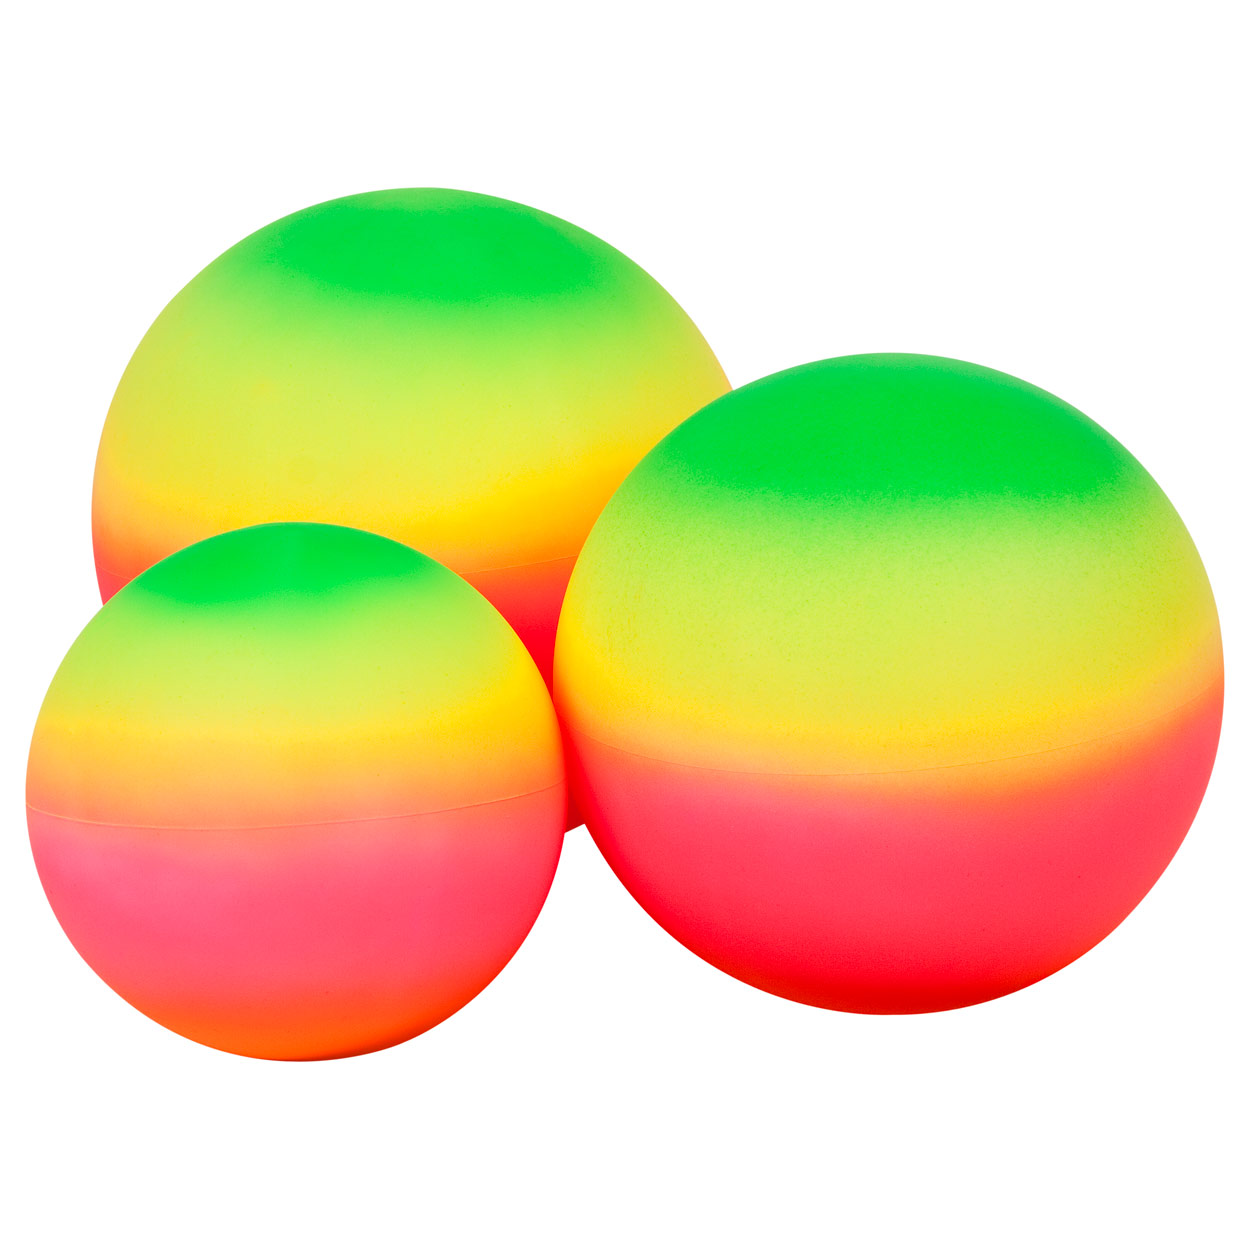 Regenbogenball Spielball in Regenbogenfarbe Ball Kinder Bunt Gummiball